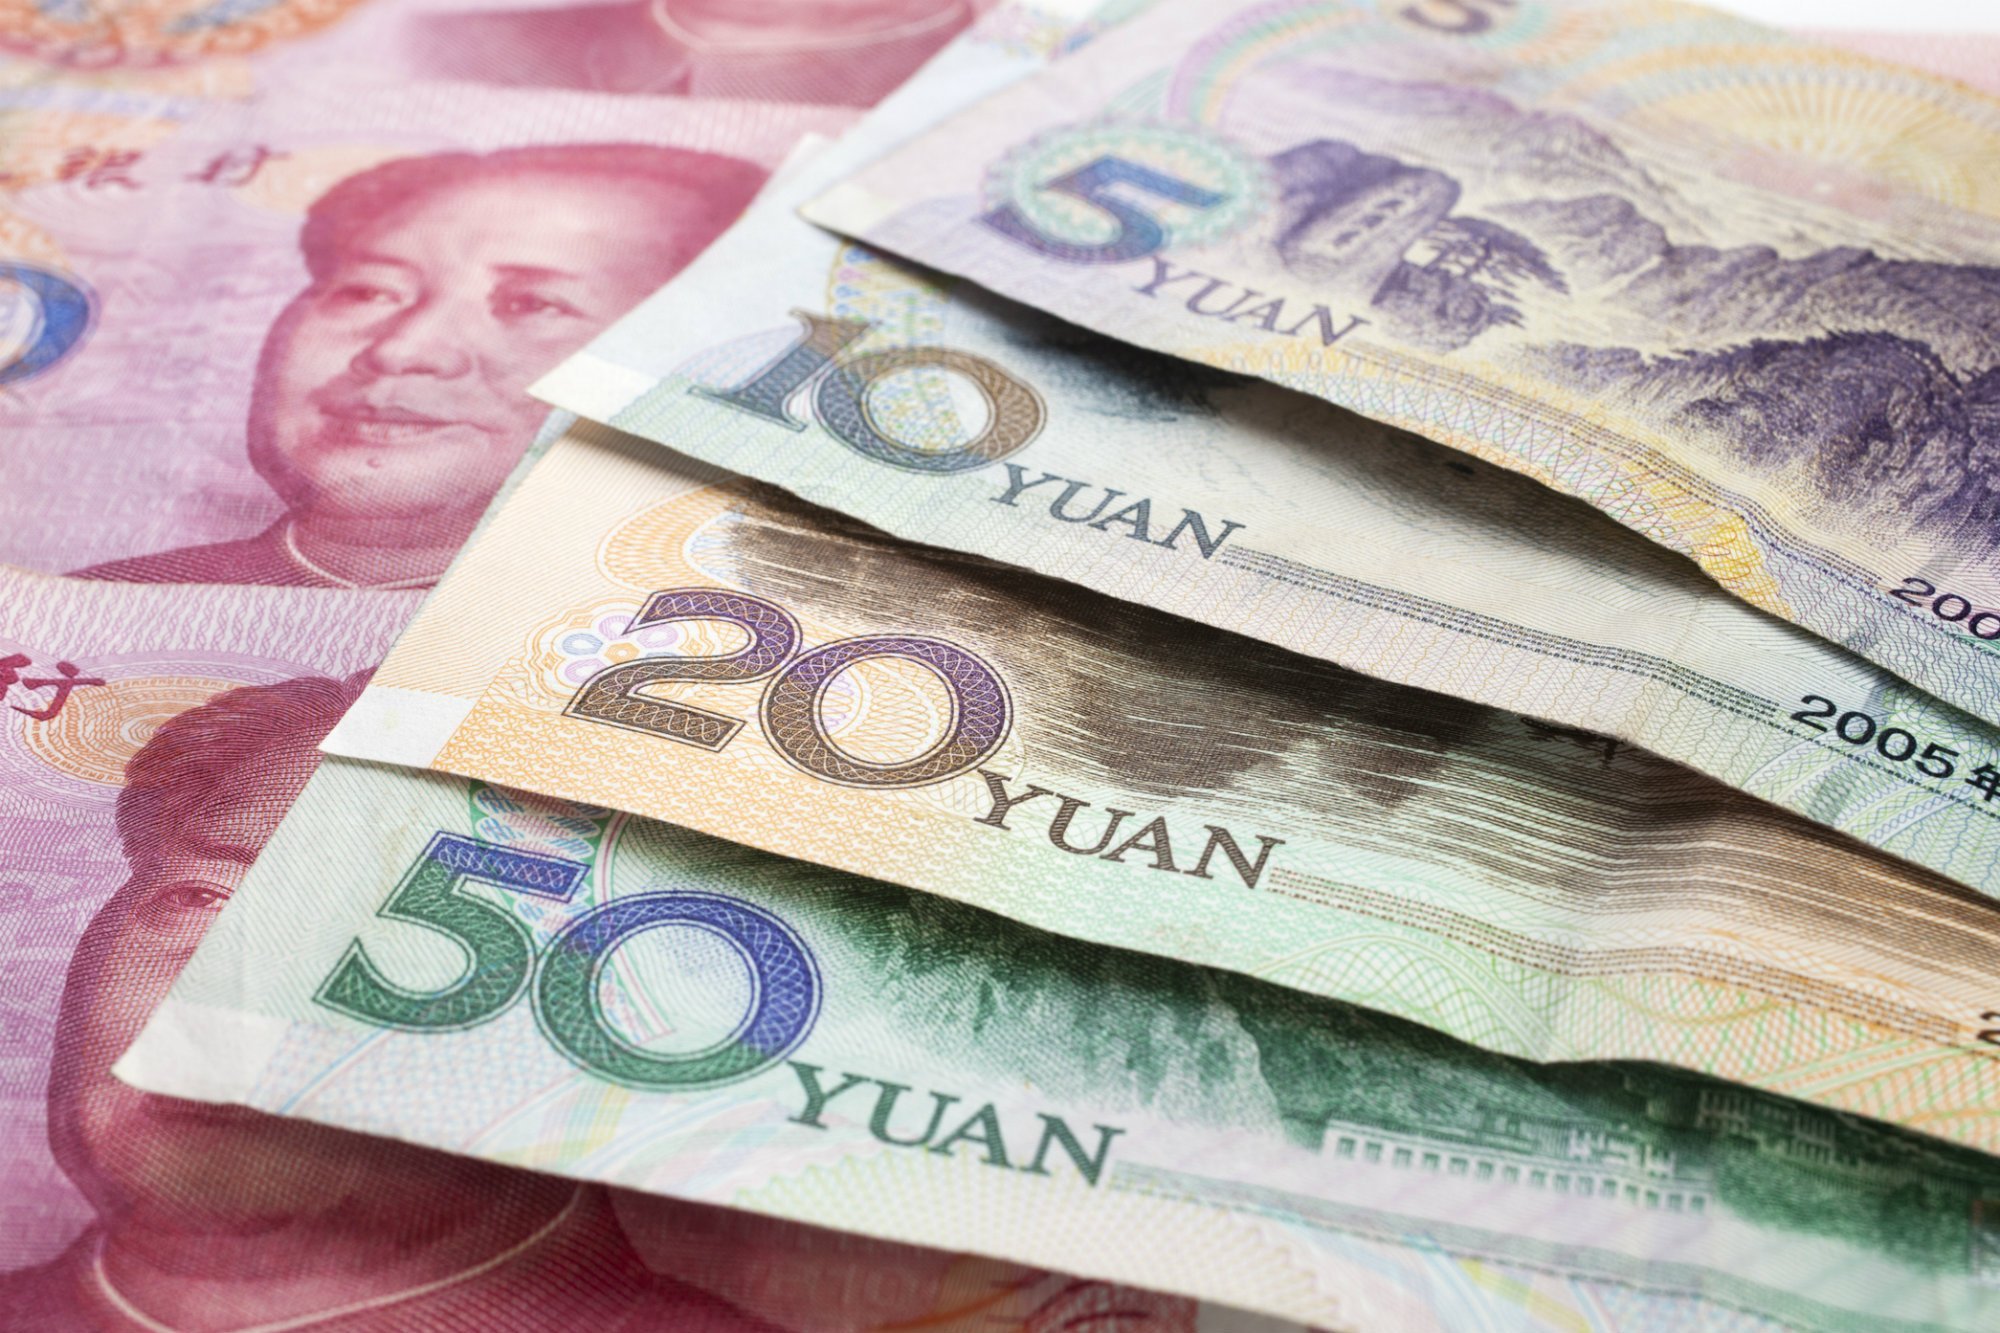 Tiền mặt của Trung Quốc được chấp nhận sử dụng ở các nước nào?